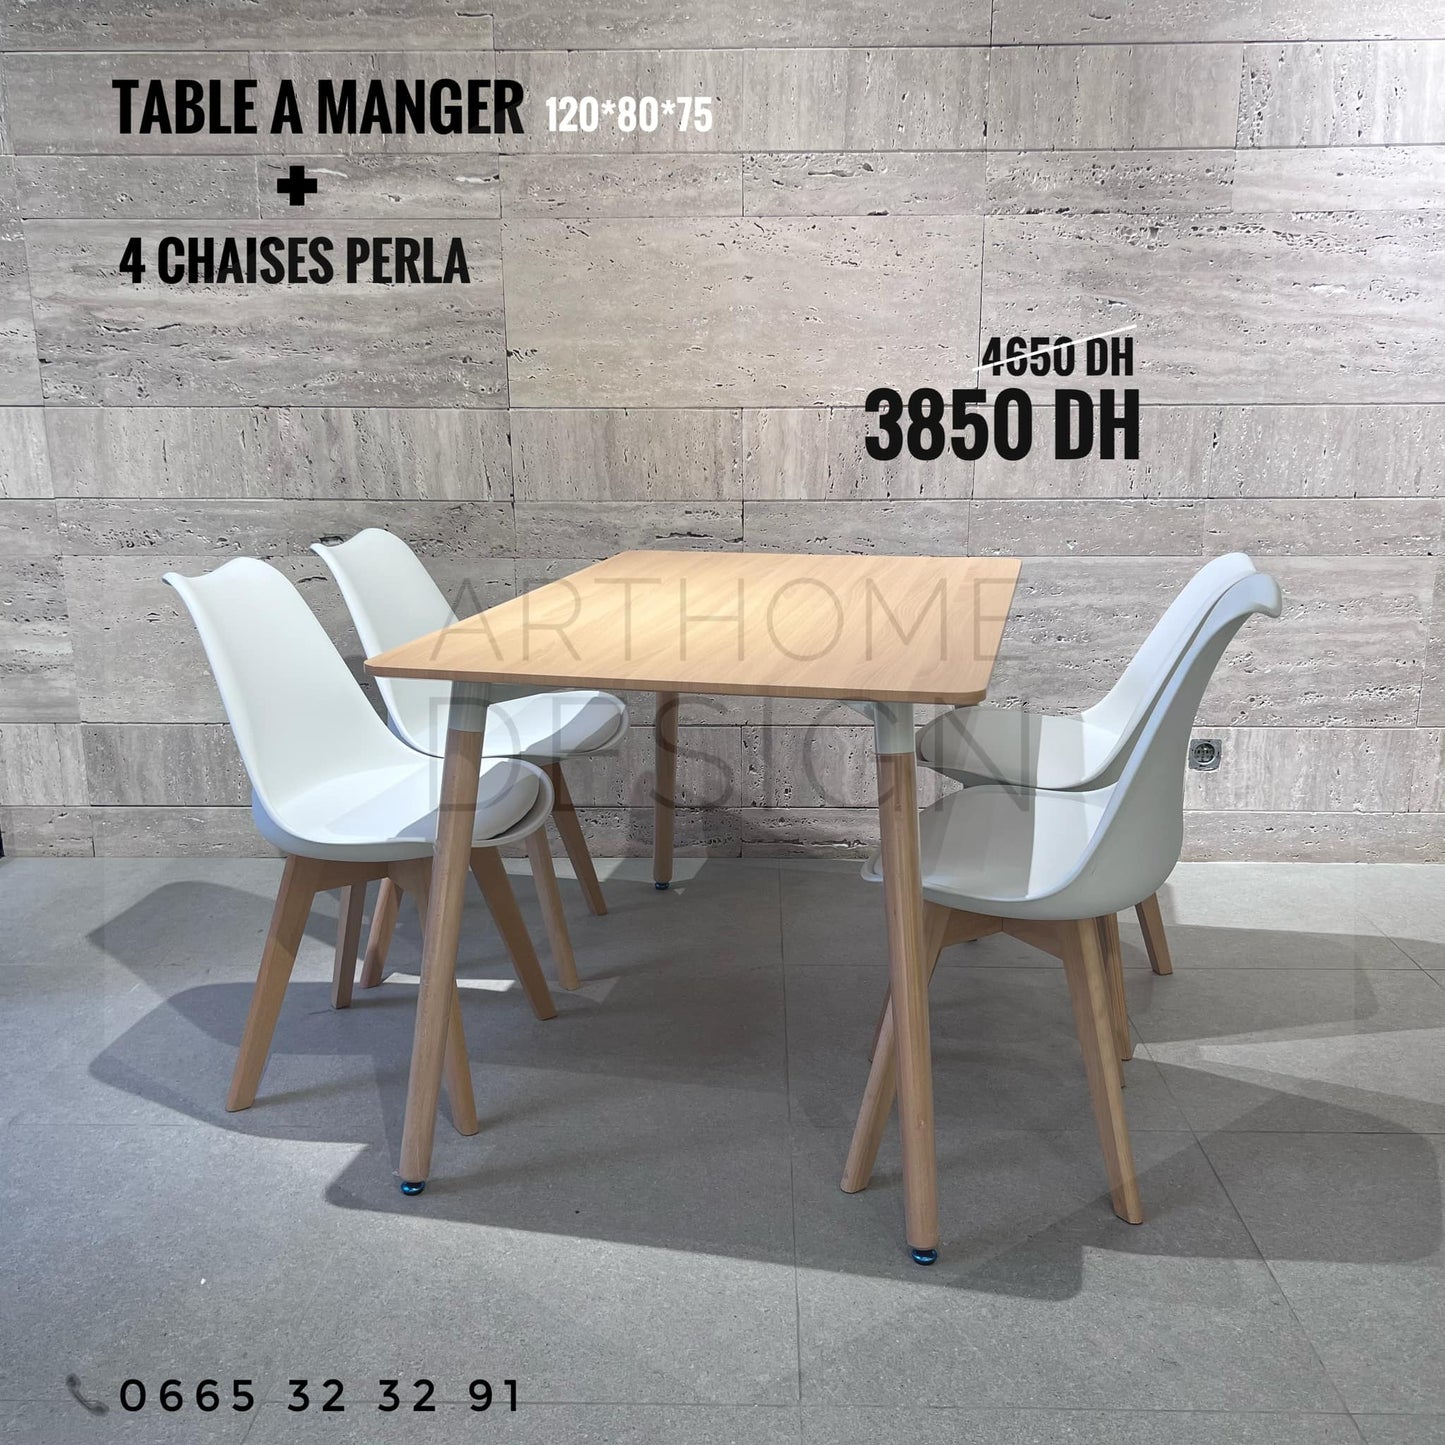 TABLE A MANGER 120*80 CM AVEC 4 CHAISES PERLA